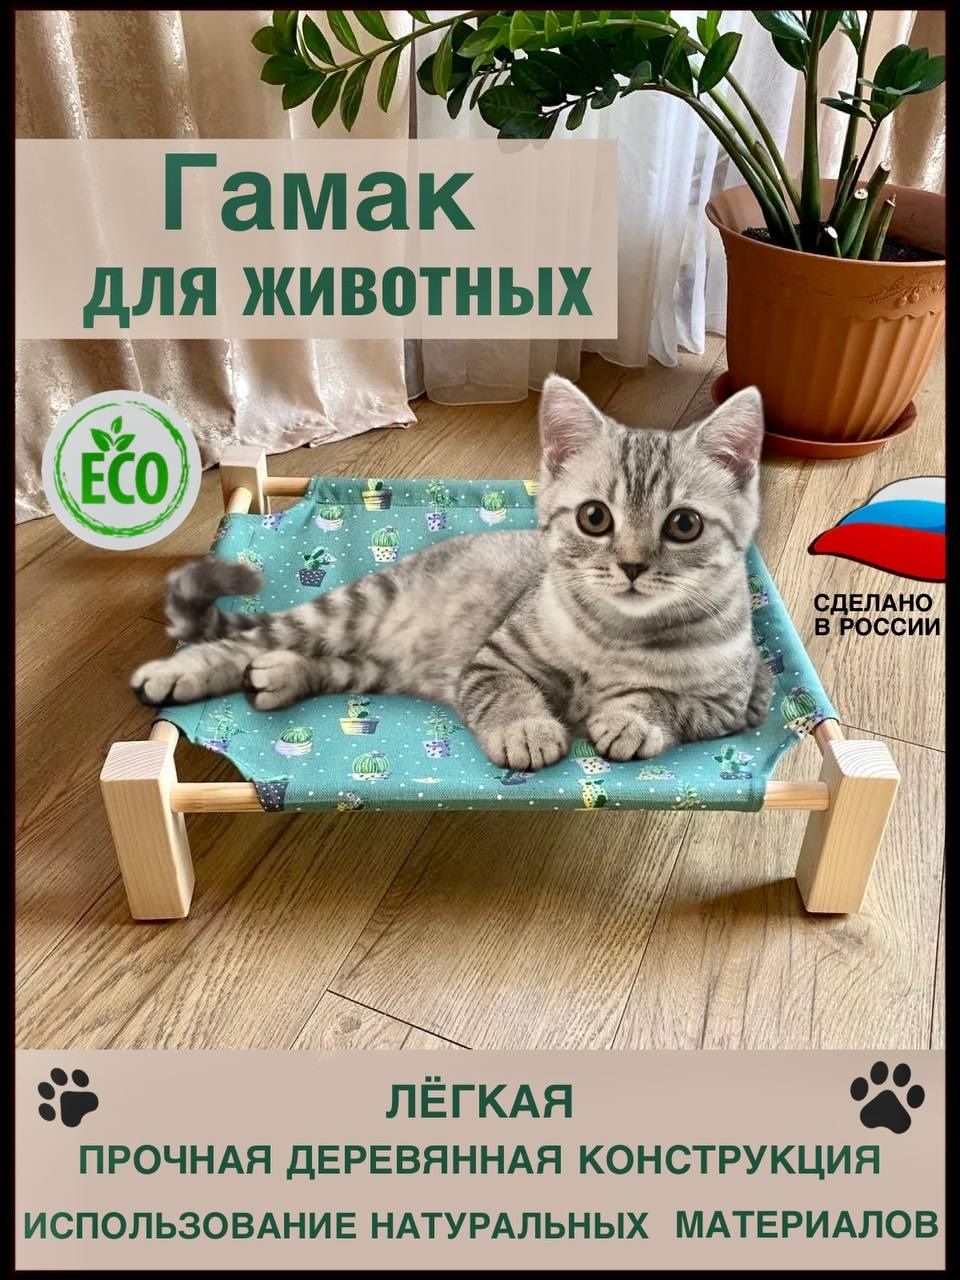 Купить лежанку, гамак на батарею для кошек, котят и котов в СПб недорого - КОТОРАЙ